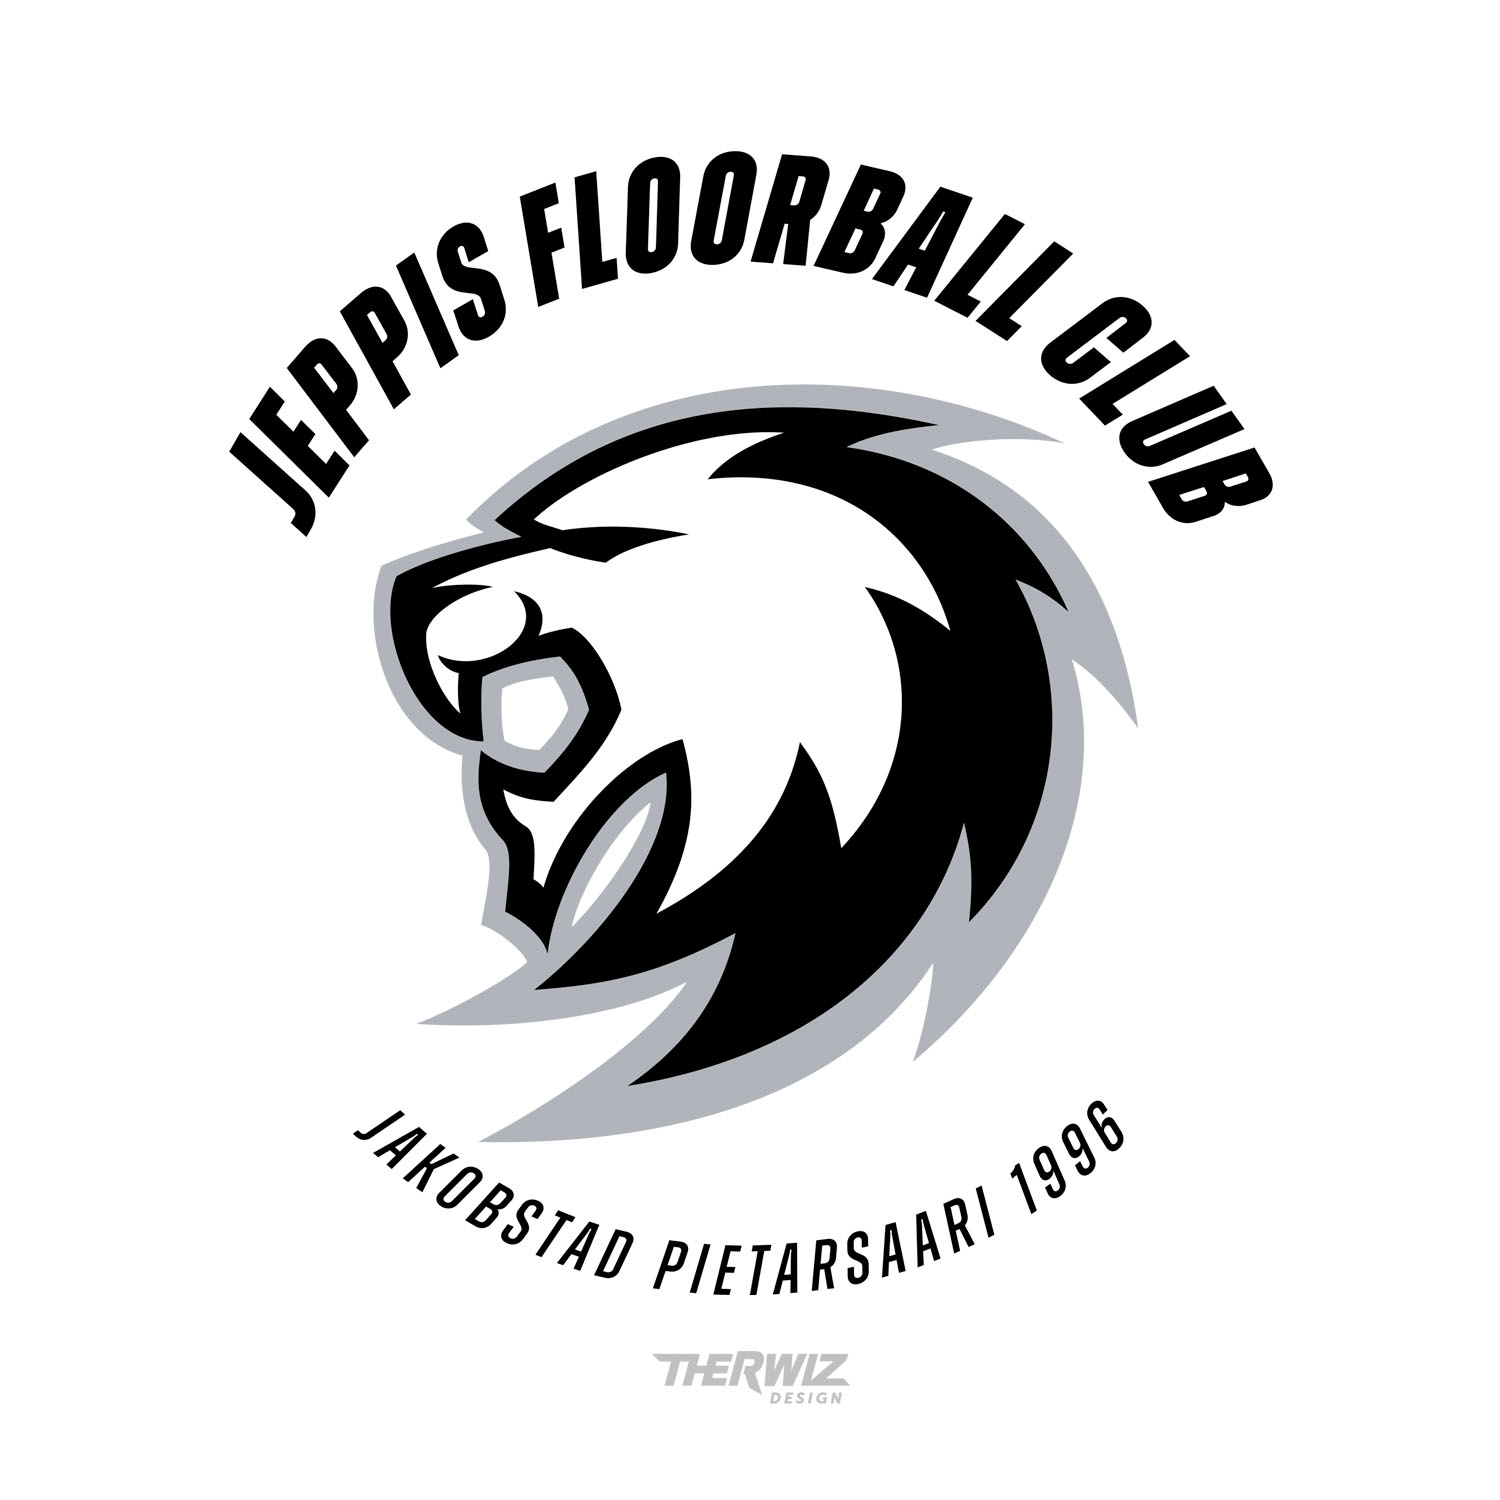 Therwiz Design logon suunnittelu, Jeppis FBC logo